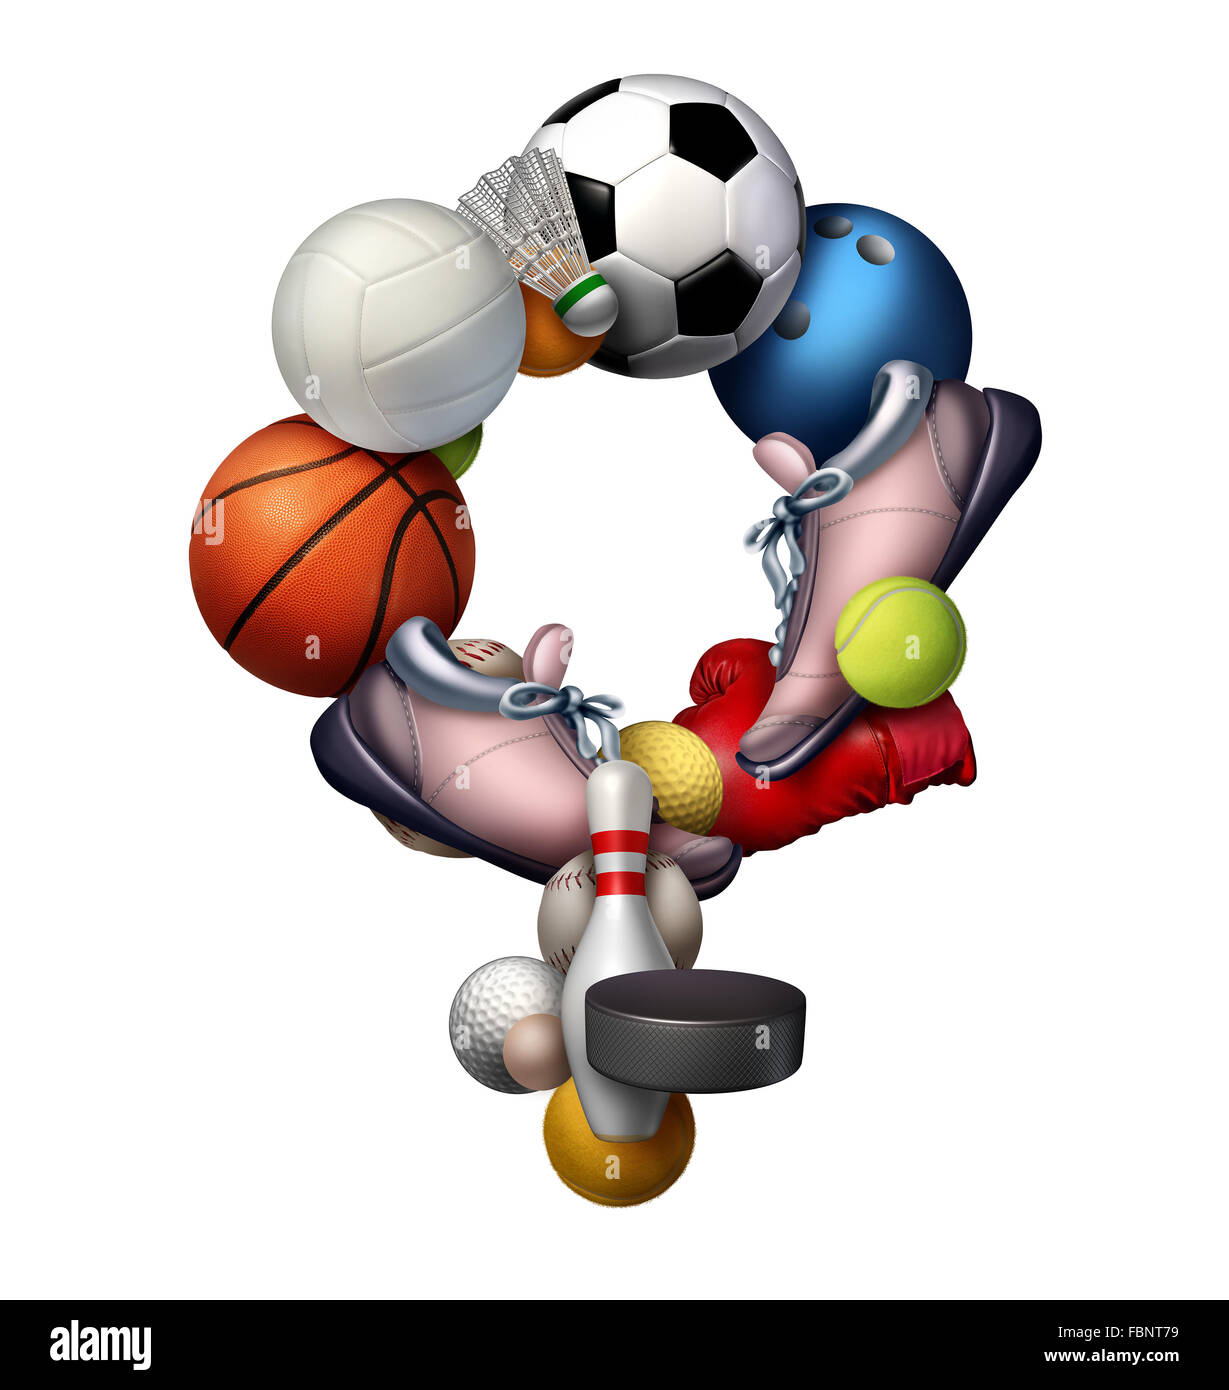 Weibliche Sport Zeichen Symbol und Symbol oder Sport Frauen-Konzept als eine Gruppe von Sportausrüstung wie Fußball Volleyball Tennis geformt als ein Symbol für das weibliche Geschlecht als Metapher für Mädchen Fitness und einen aktiven Lebensstil. Stockfoto